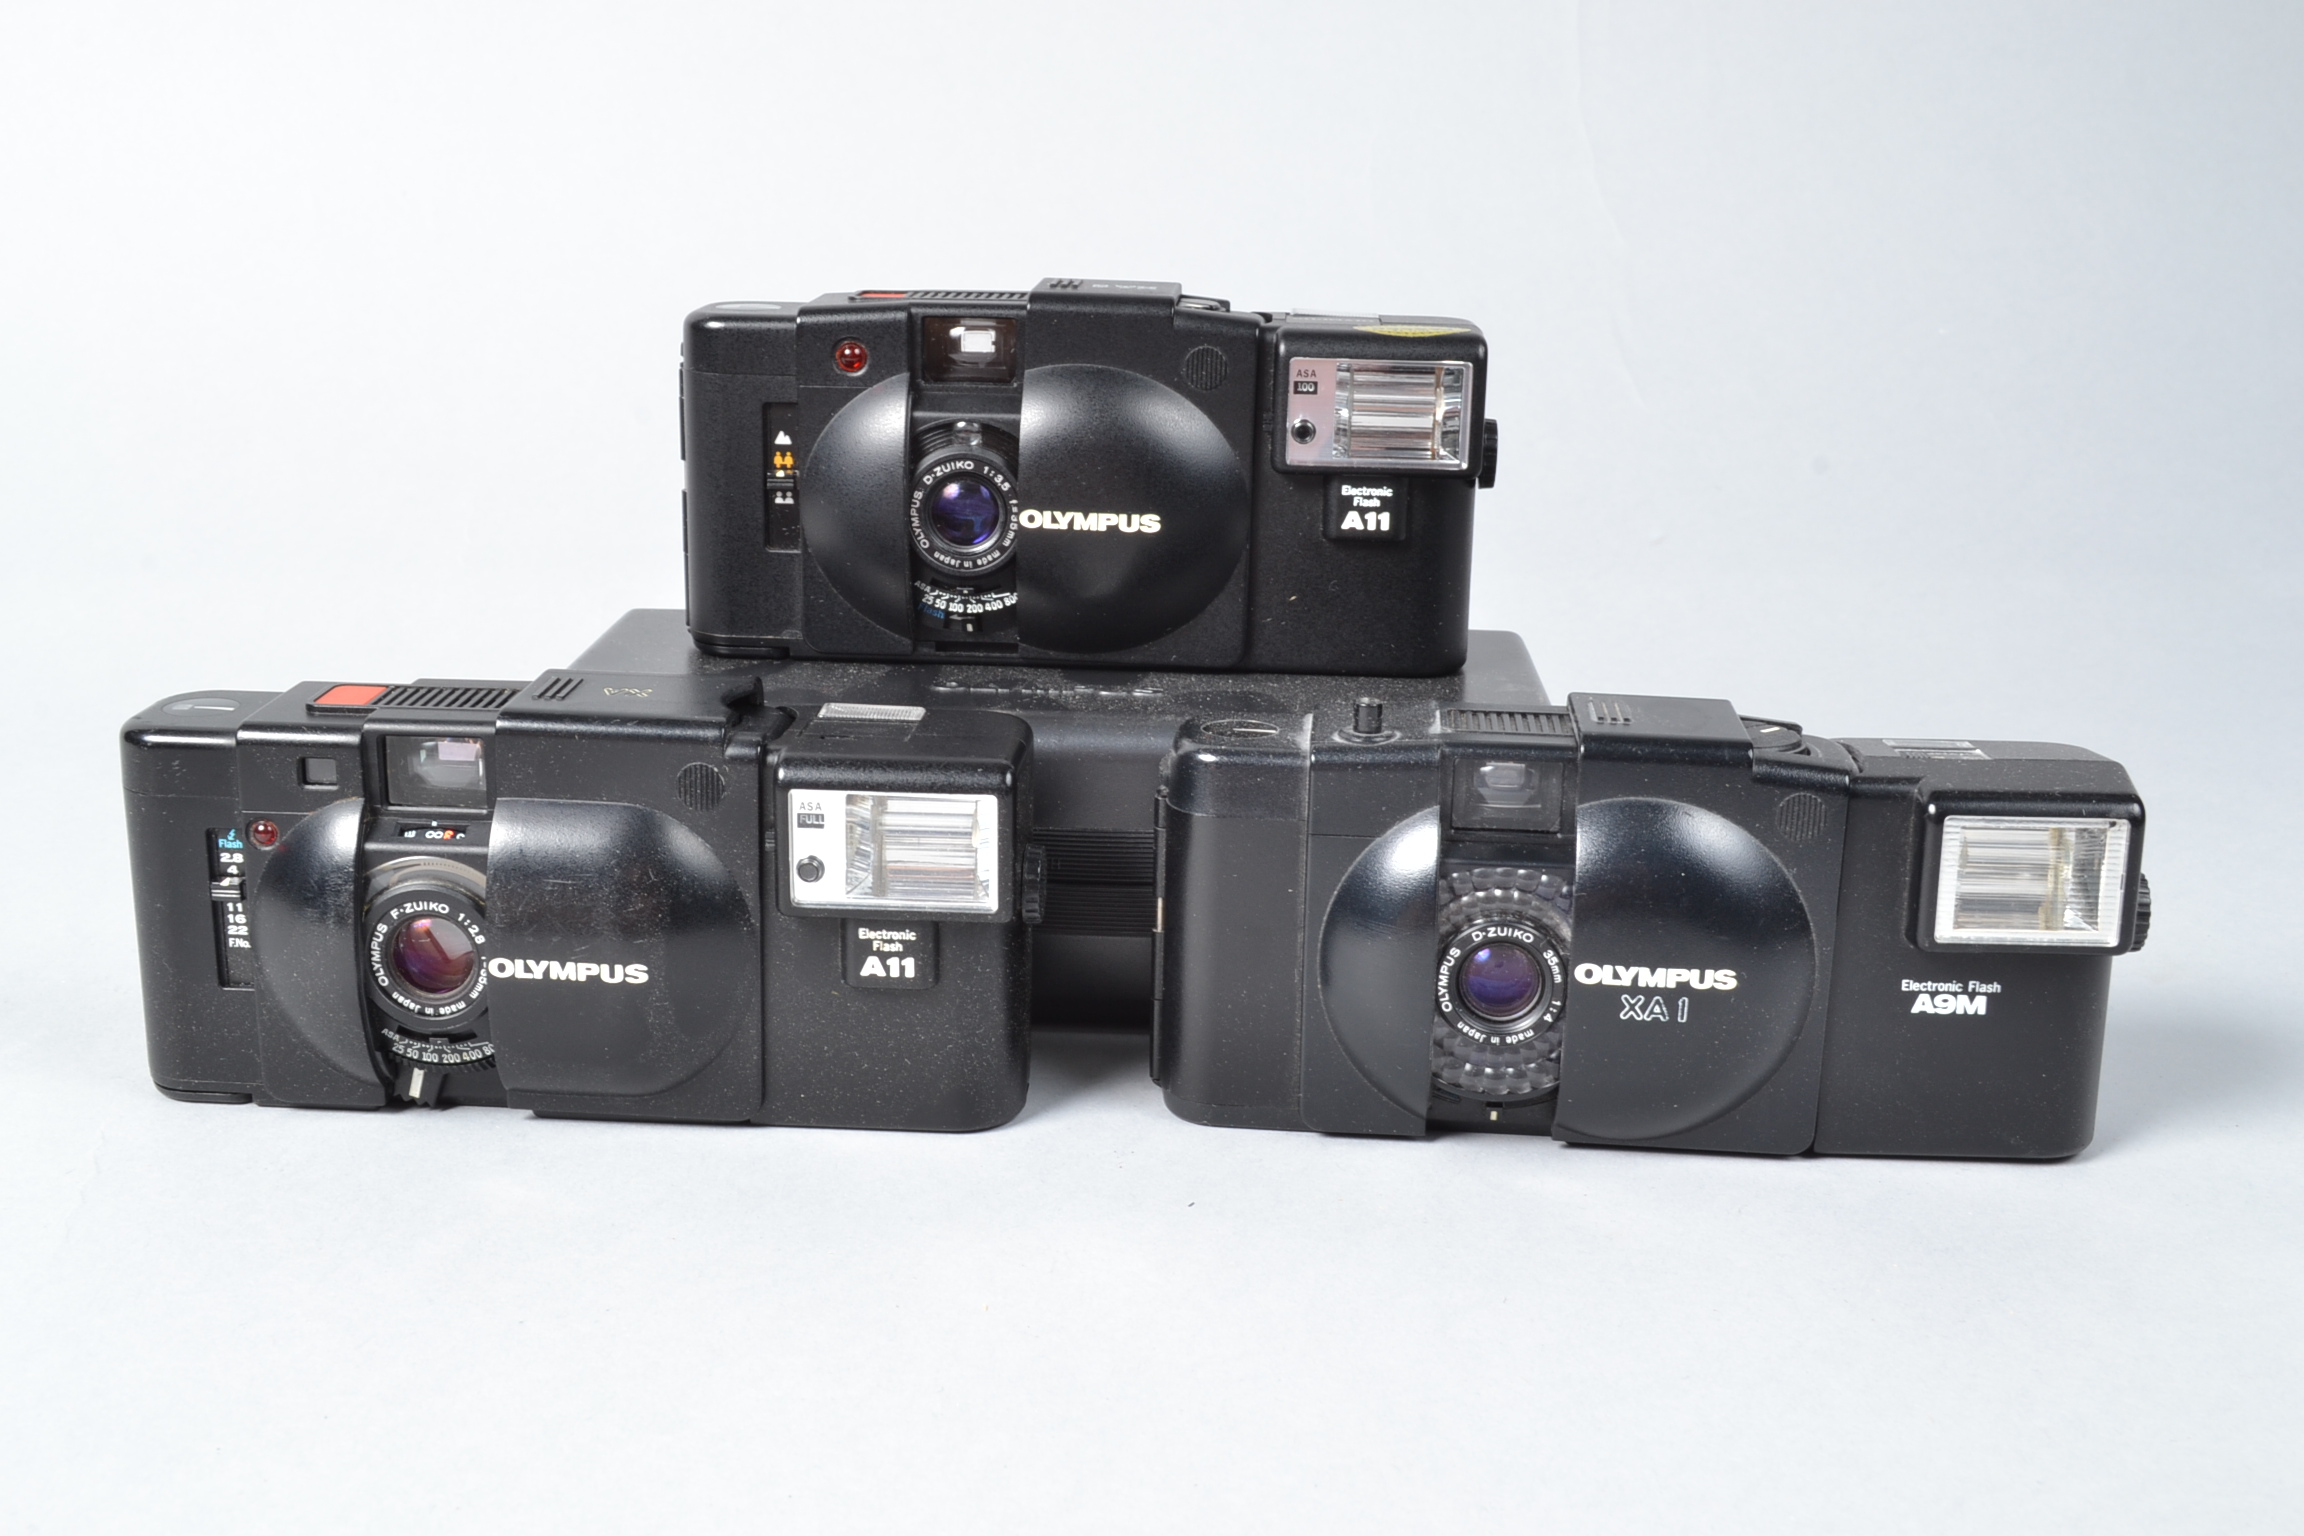 Olympus XA Compact Cameras, an Olympus XA, with A11 flash, XA-1, with A9M flash, XA-2, with A11